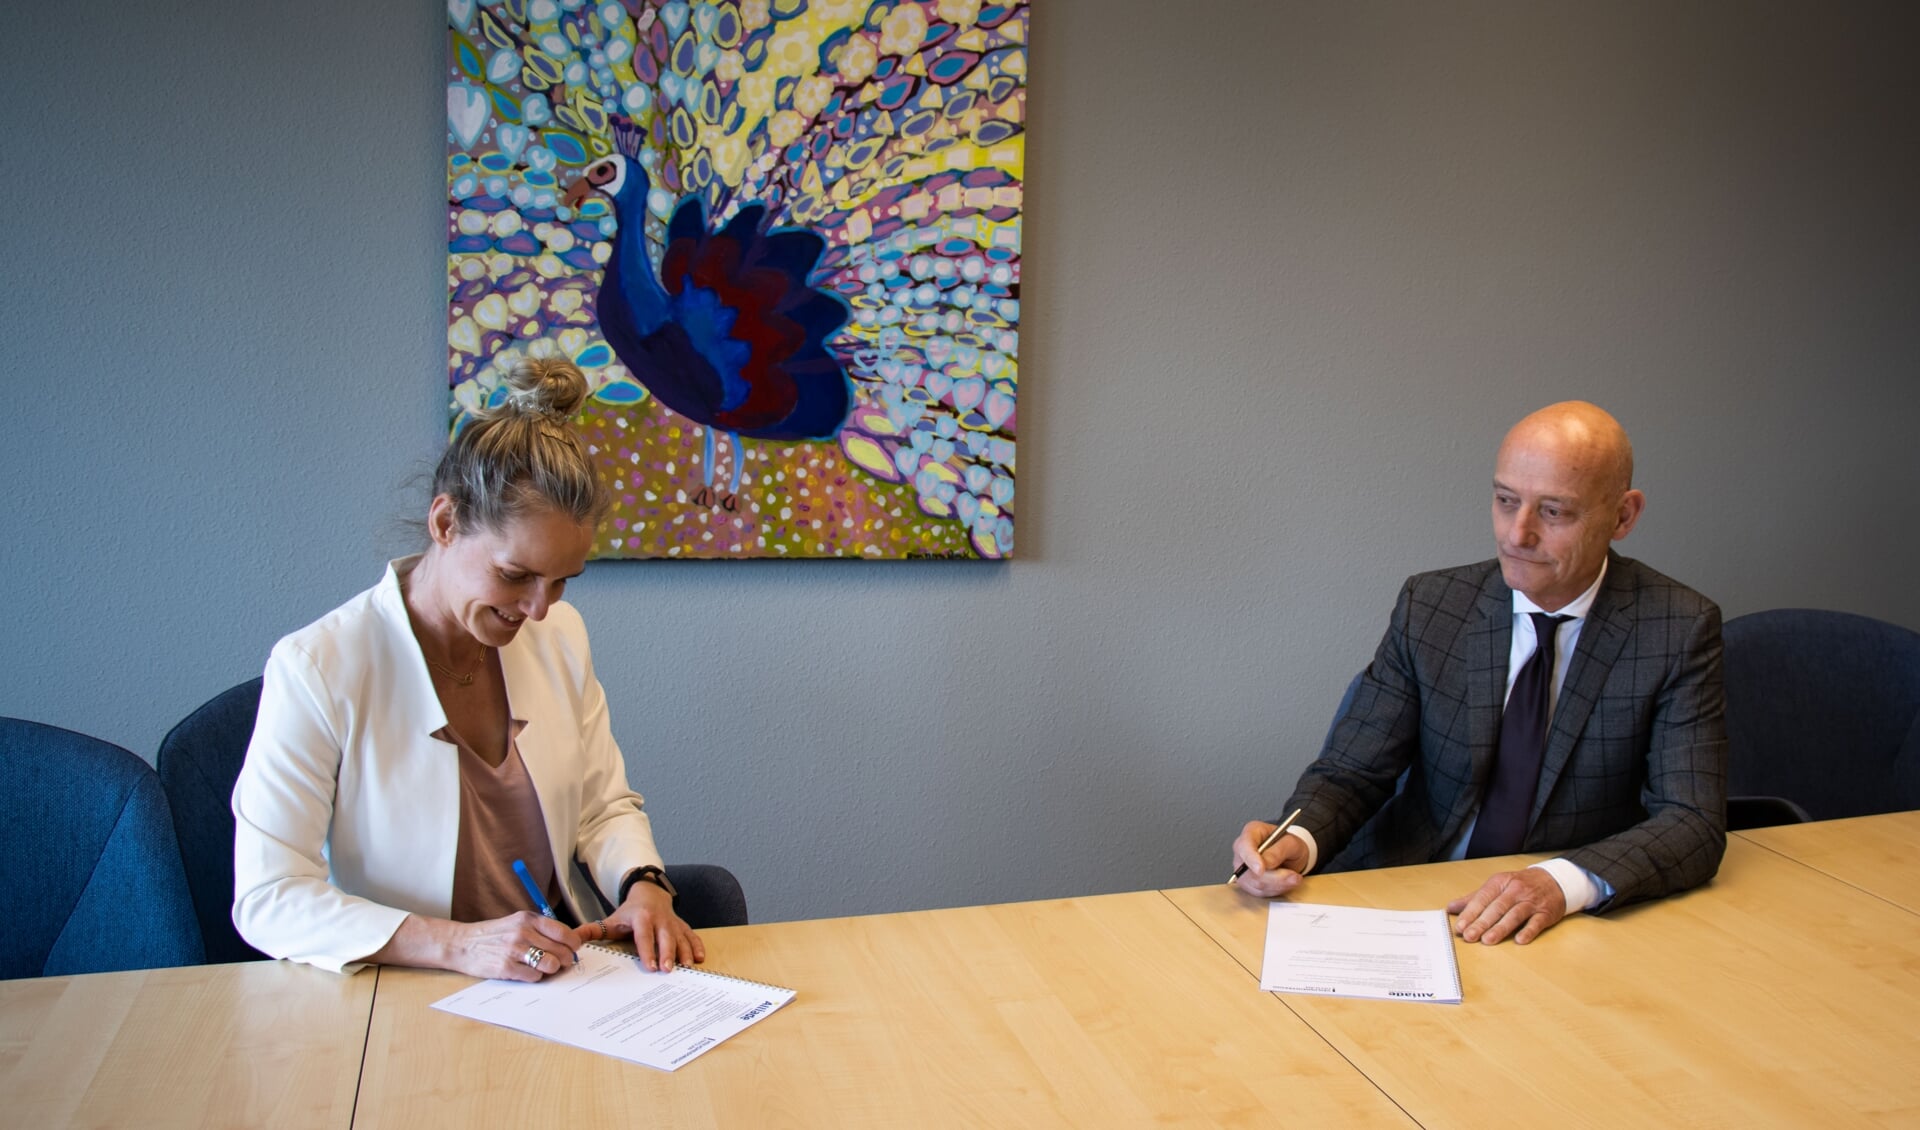 Directeur Publieke Gezondheid, Margreet de Graaf van GGD Fryslân en Vincent Maas, voorzitter van de Raad van Bestuur van Zorggroep Alliade, ondertekenen het convenant.